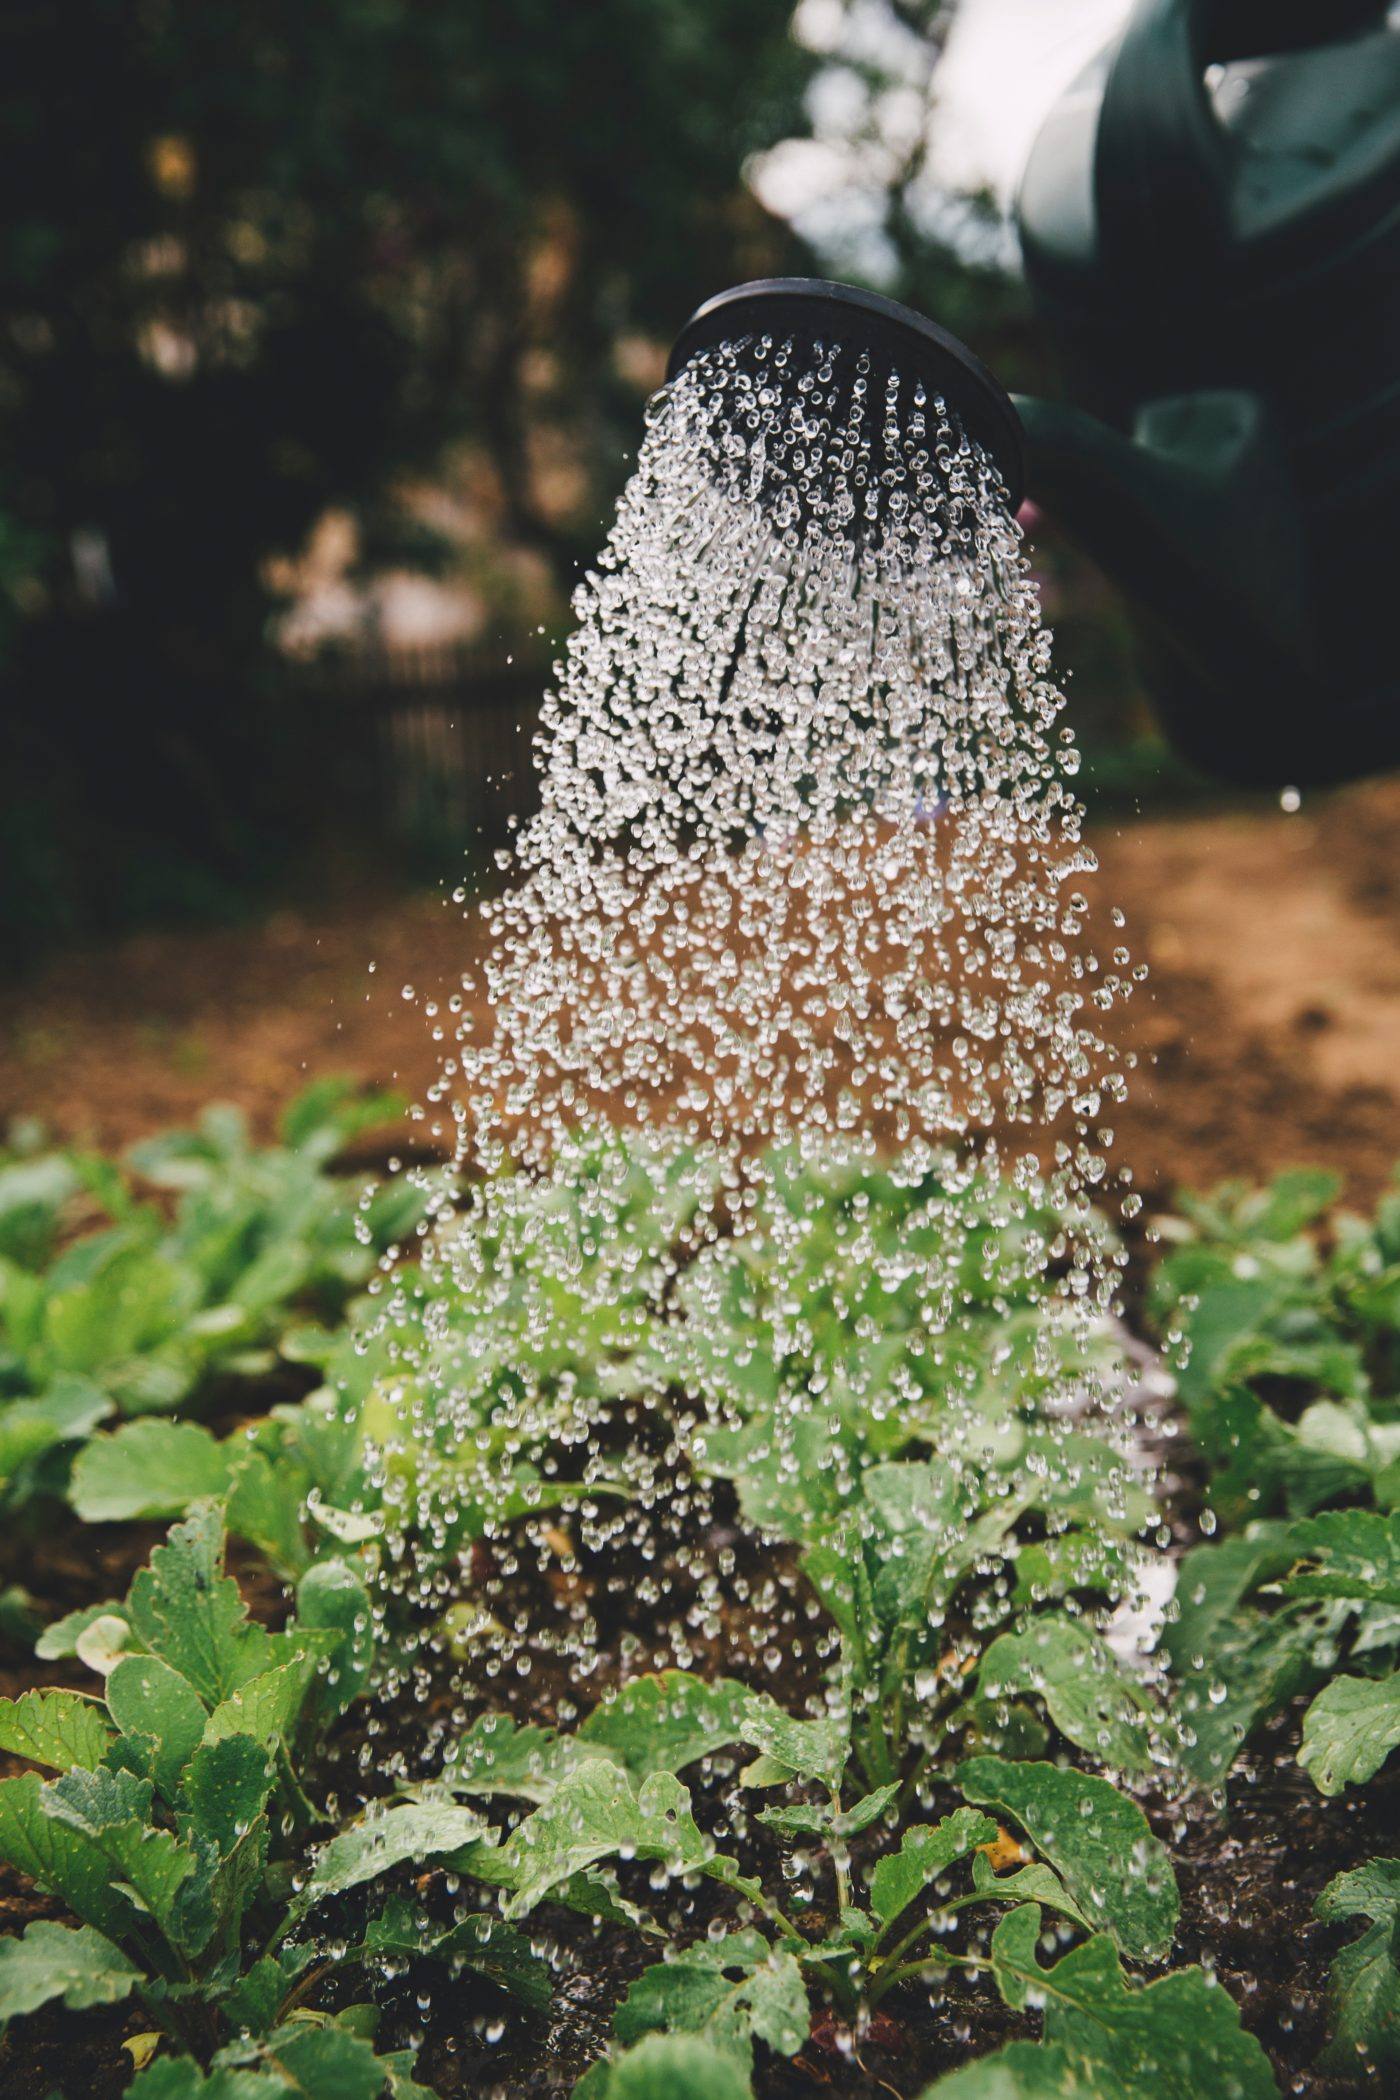 Un récupérateur d'eau de pluie pour arroser votre jardin